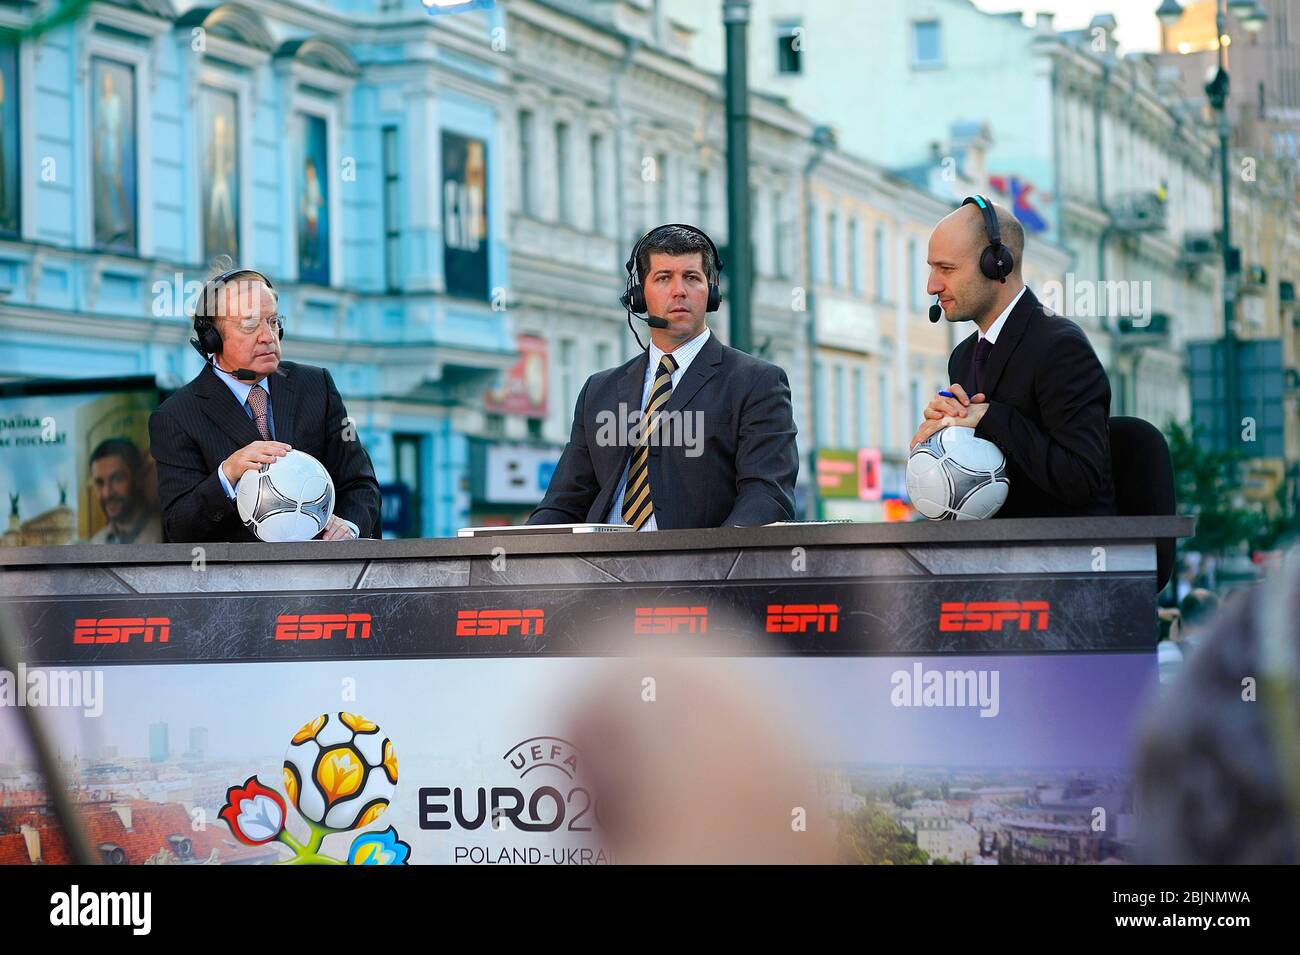 Sportkommentatoren von ESPN-Kanal halten Fußball-Bälle über das Fußballspiel auf der Straße Stockfoto